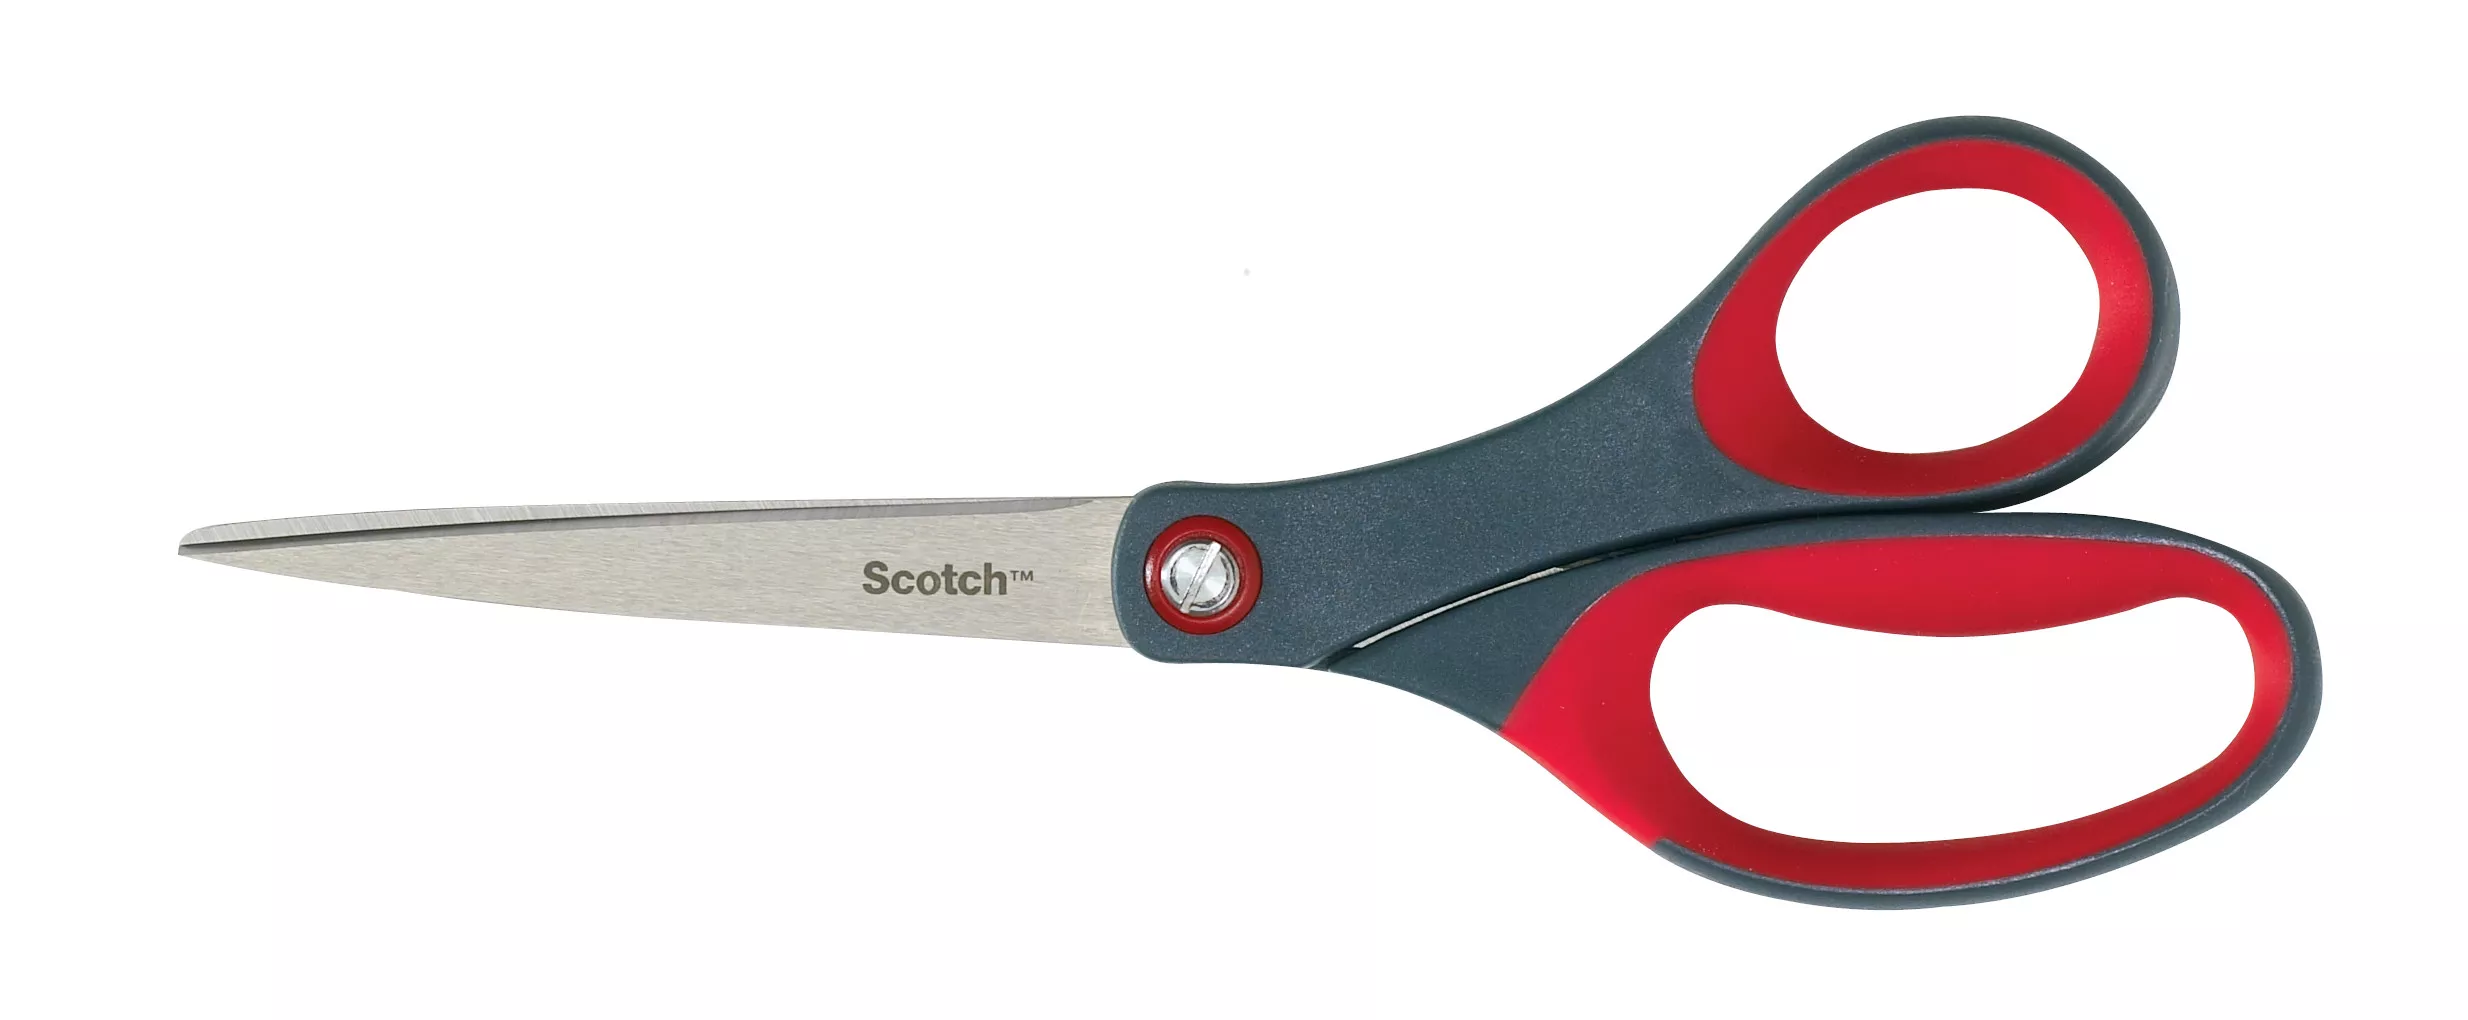 Product Number 1457TU | Scotch ™ 7 in Precision Ultra Edge Scissors 1457TU-MIX